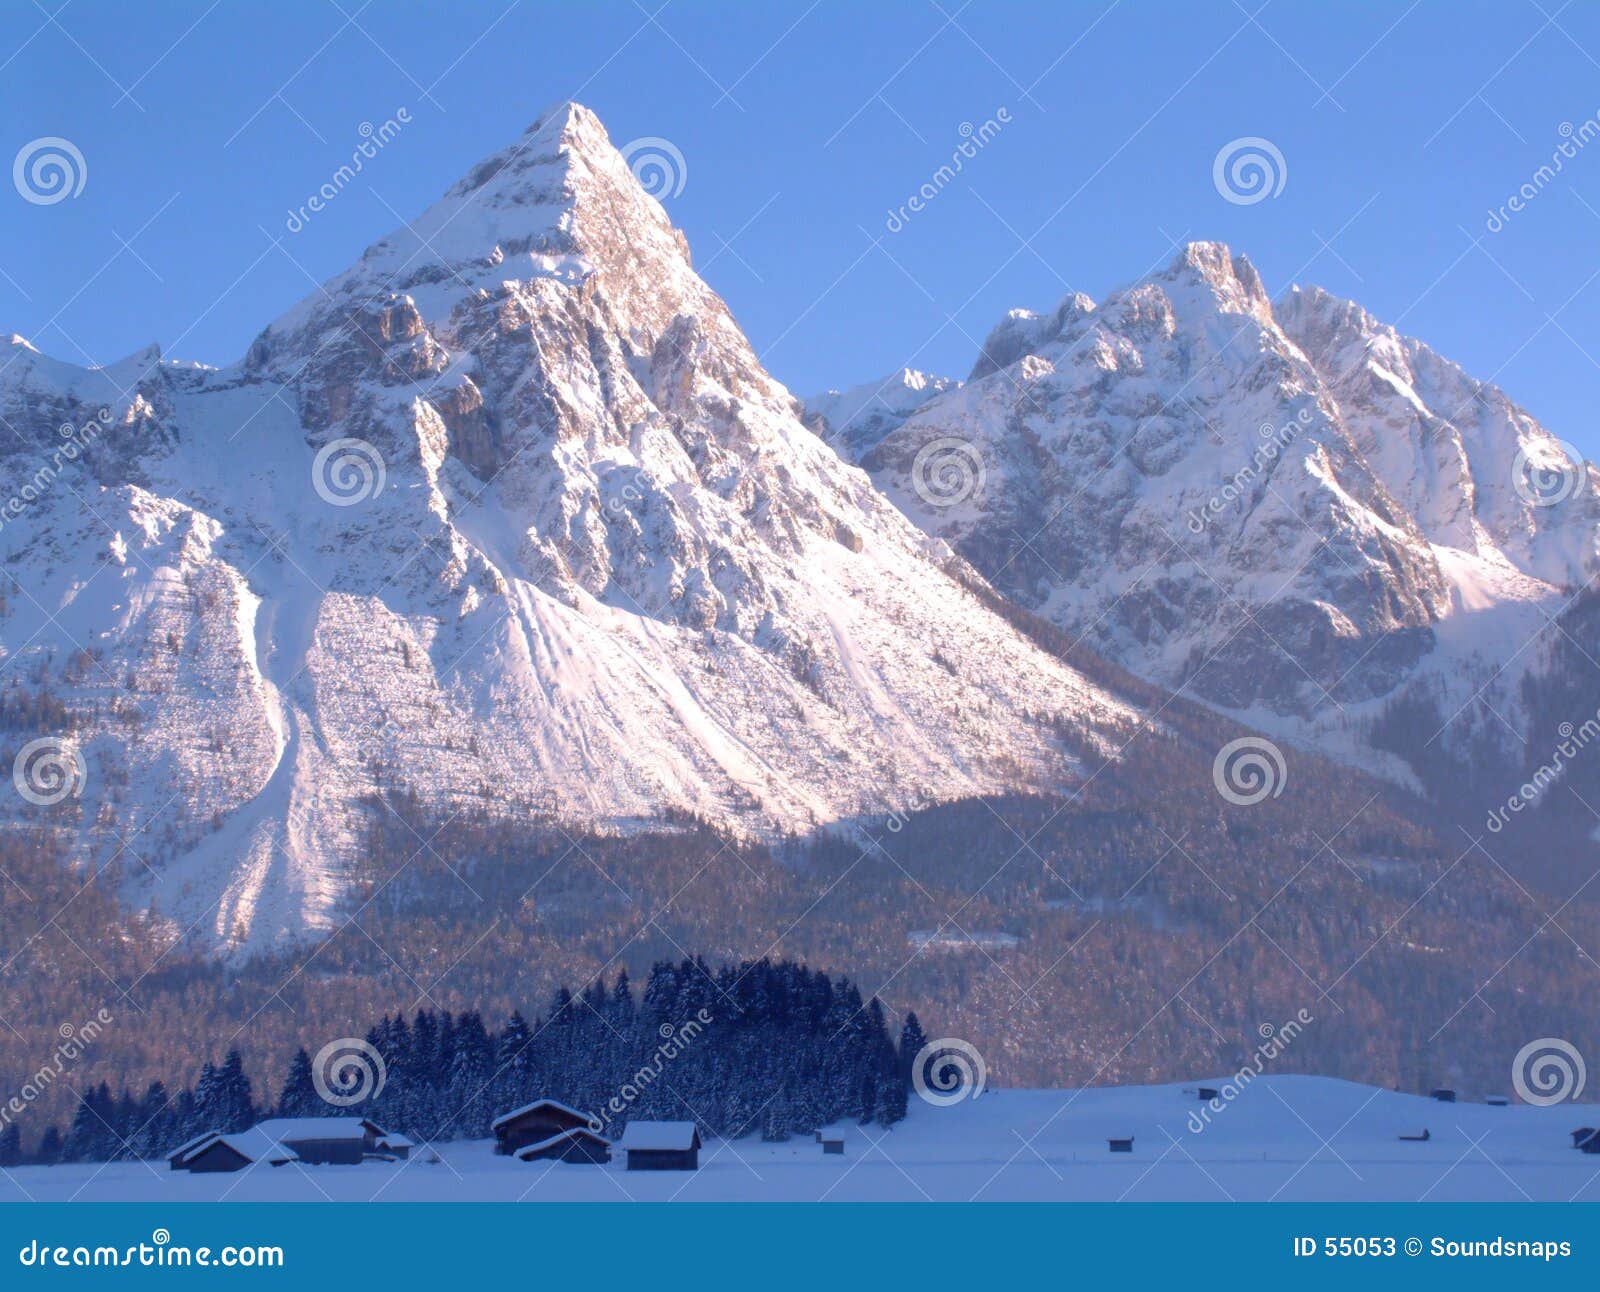 snowy mountain peaks